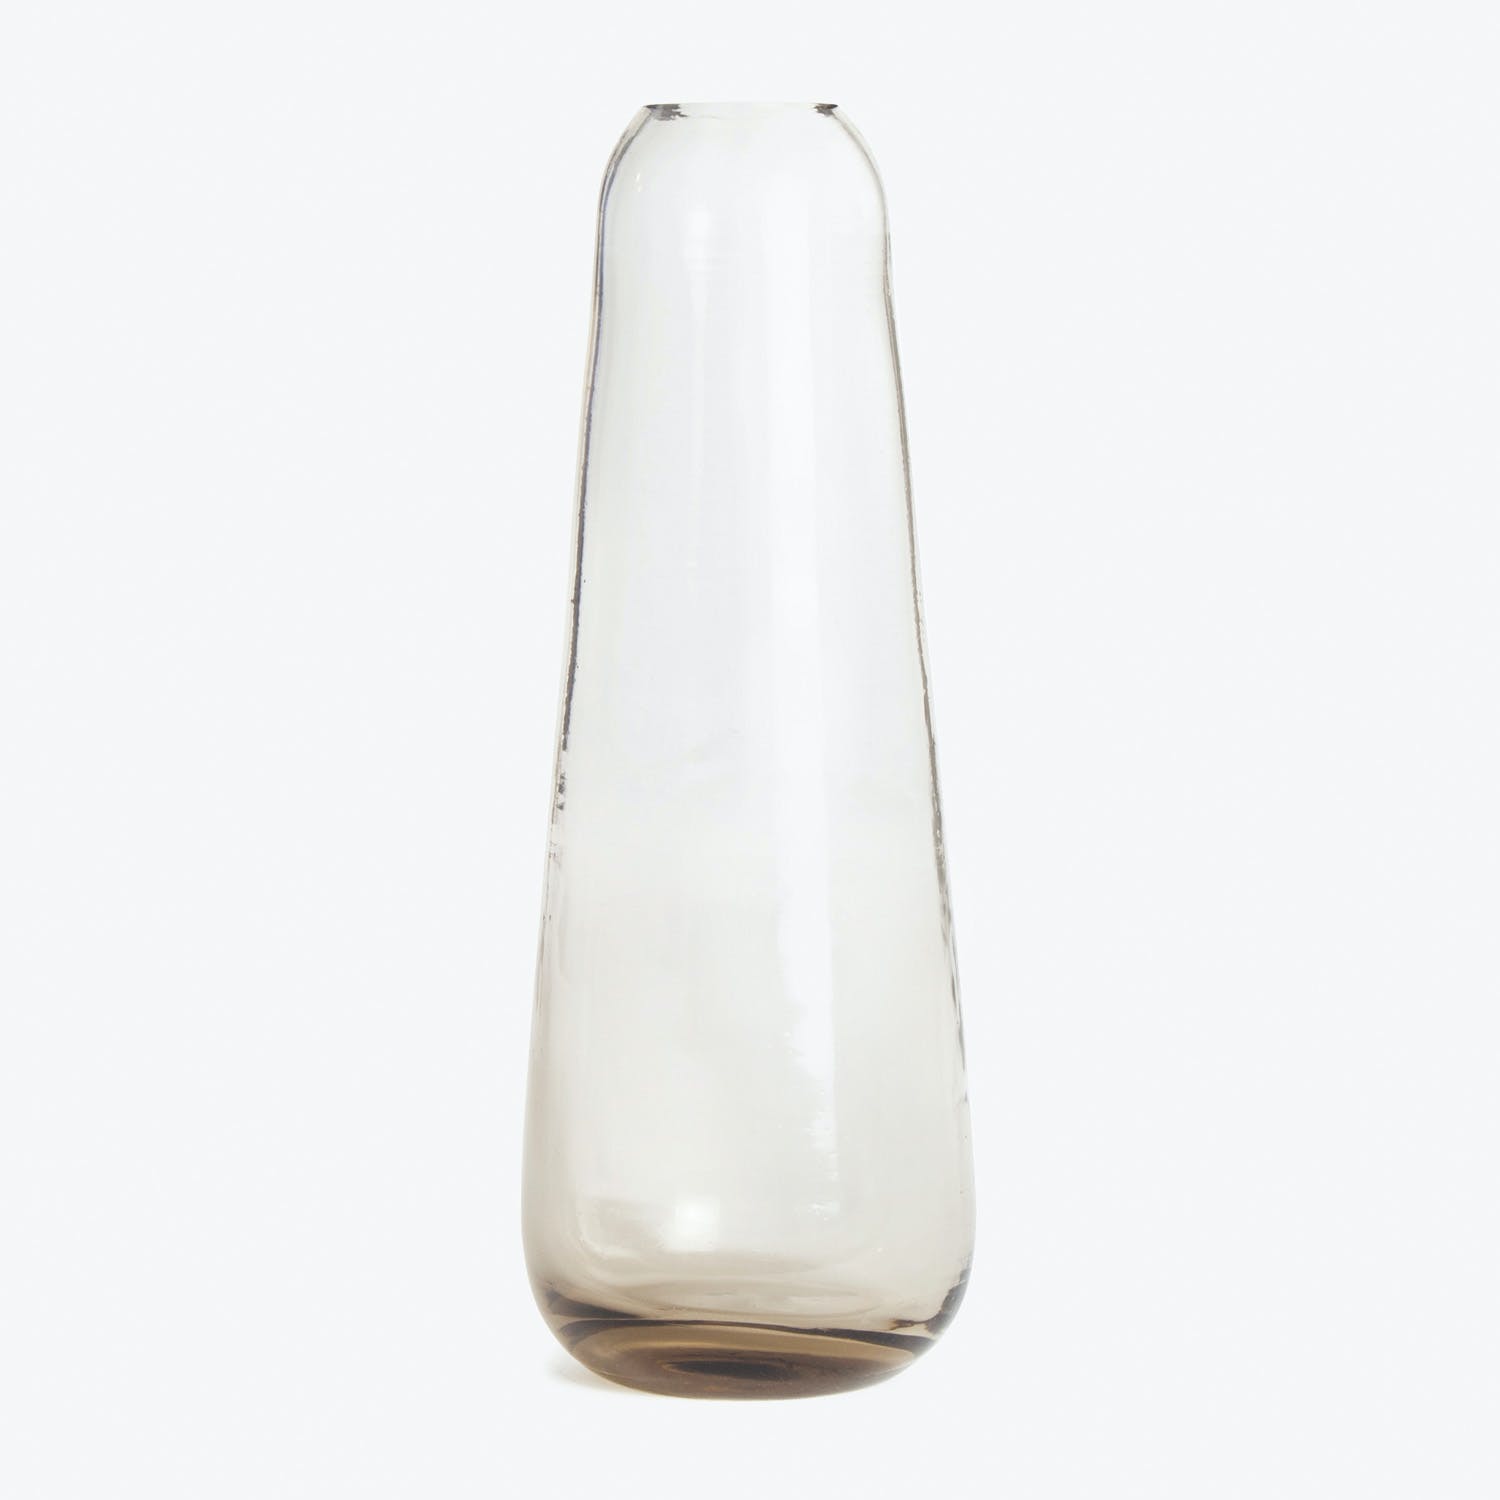 Elegant glass vase with sleek design, perfect for floral arrangements.